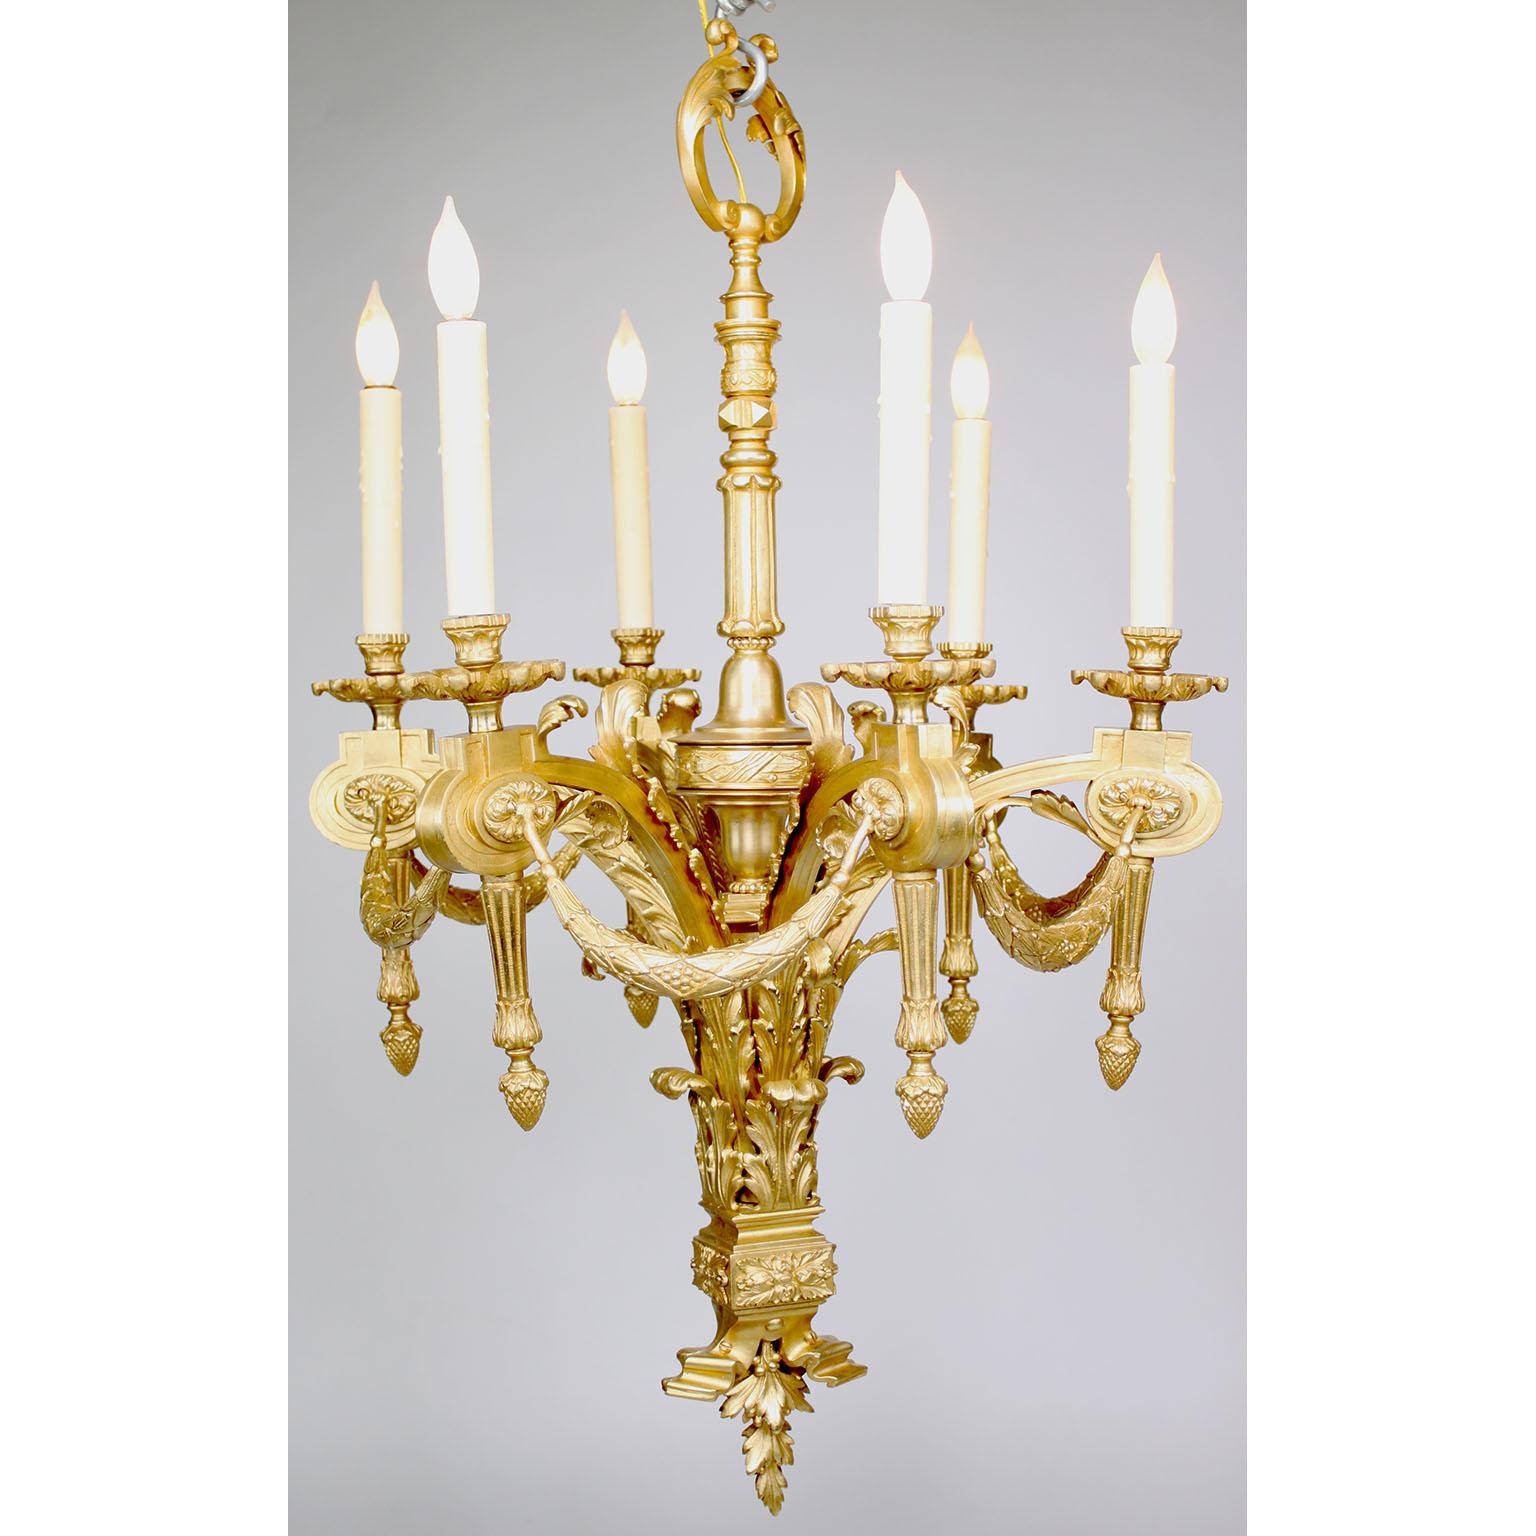 Charmant lustre à six lumières en bronze doré de style Louis XVI. Chaque bras de bougie est relié à des guirlandes au-dessus d'un cartouche se terminant par un gland. La tige centrale est ornée d'une boucle florale au-dessus d'une base de feuillage